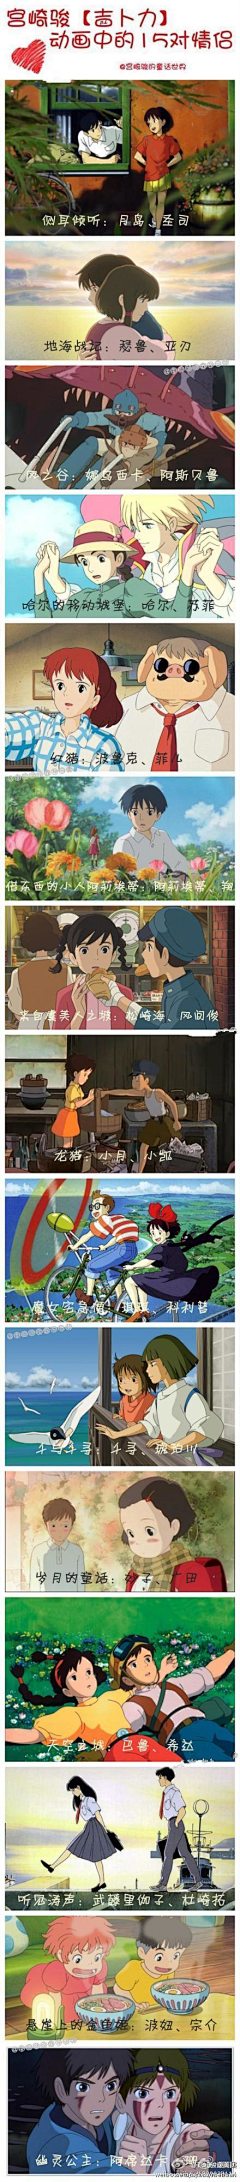 【淺花若萱、羅離殤】采集到「Memory of hayao miyazaki」